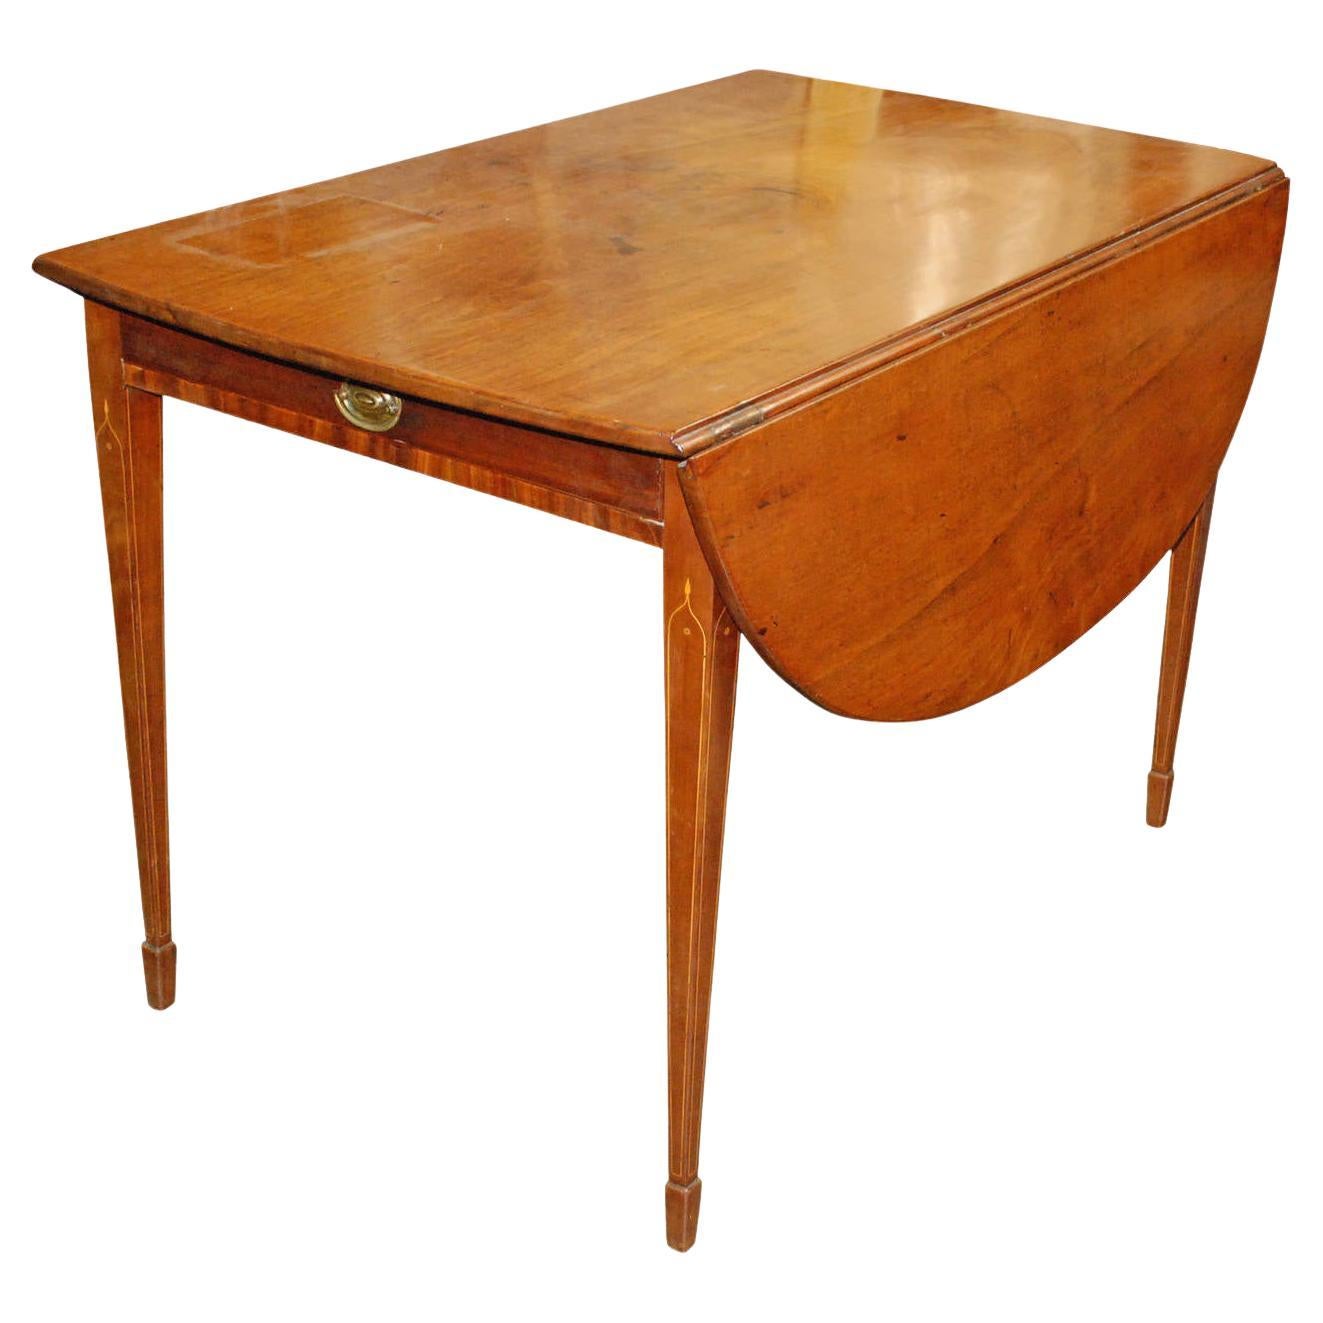 1820 English Mahogany Empire Style Pembroke Table